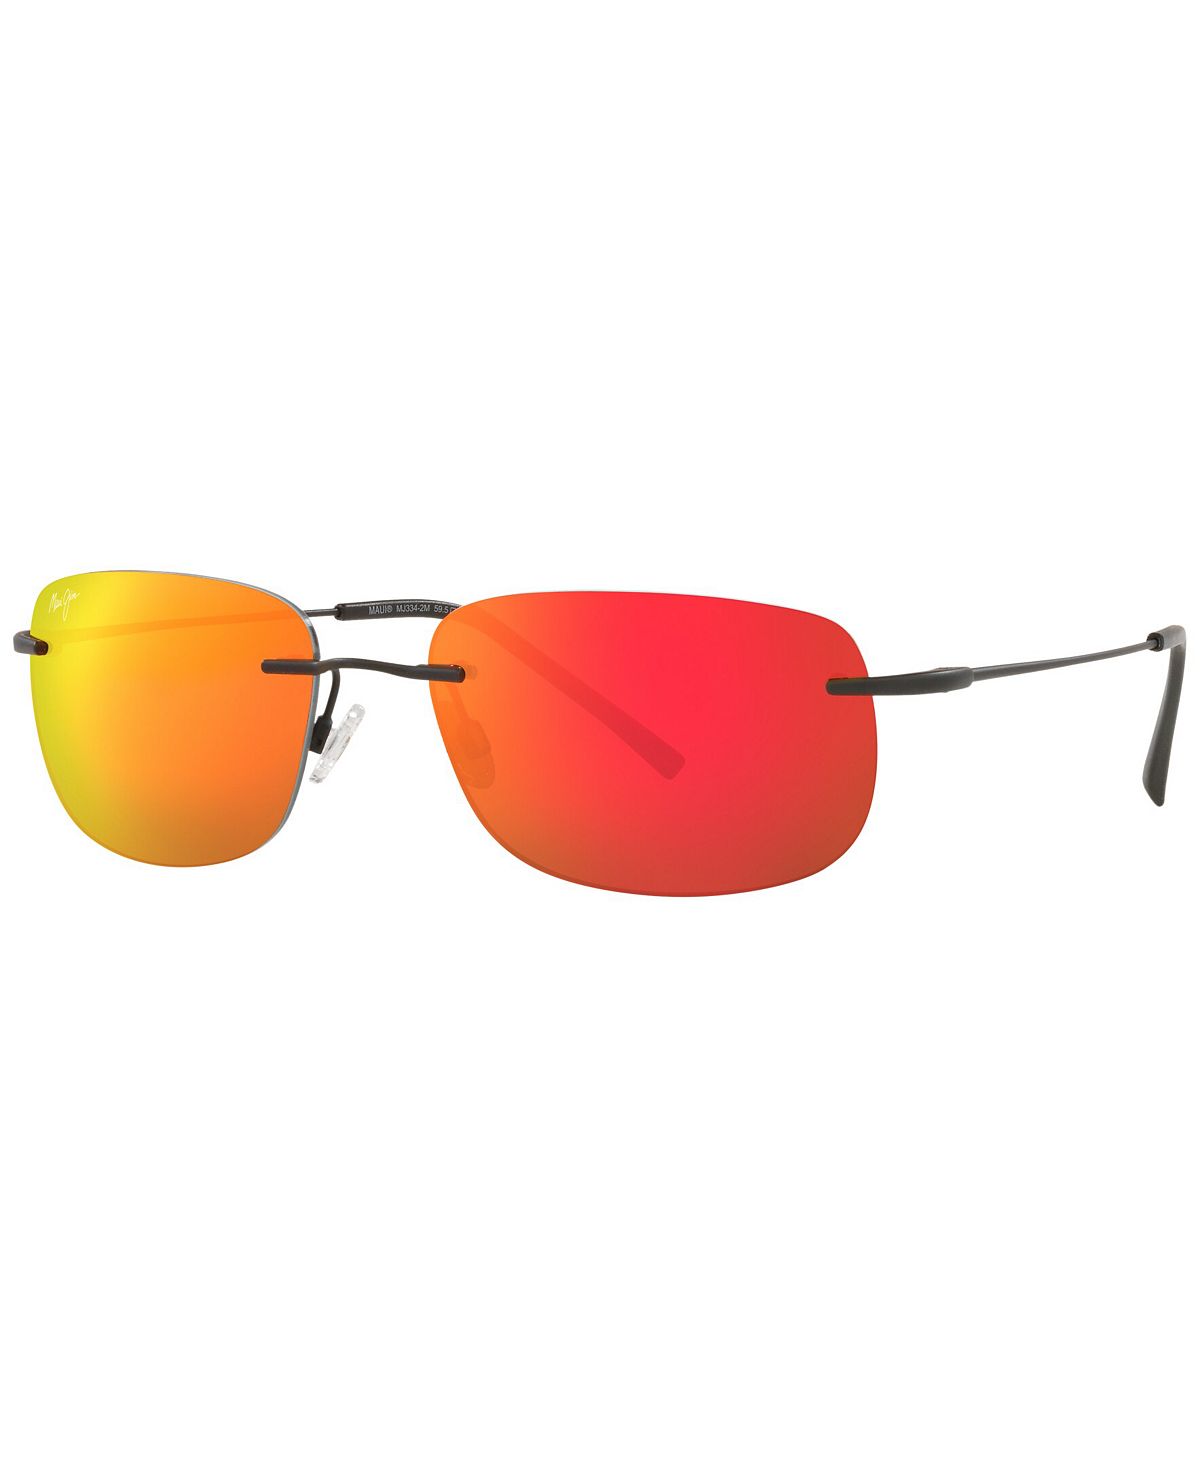 Поляризованные солнцезащитные очки унисекс, MJ000670 Ohai 59 Maui Jim, черный